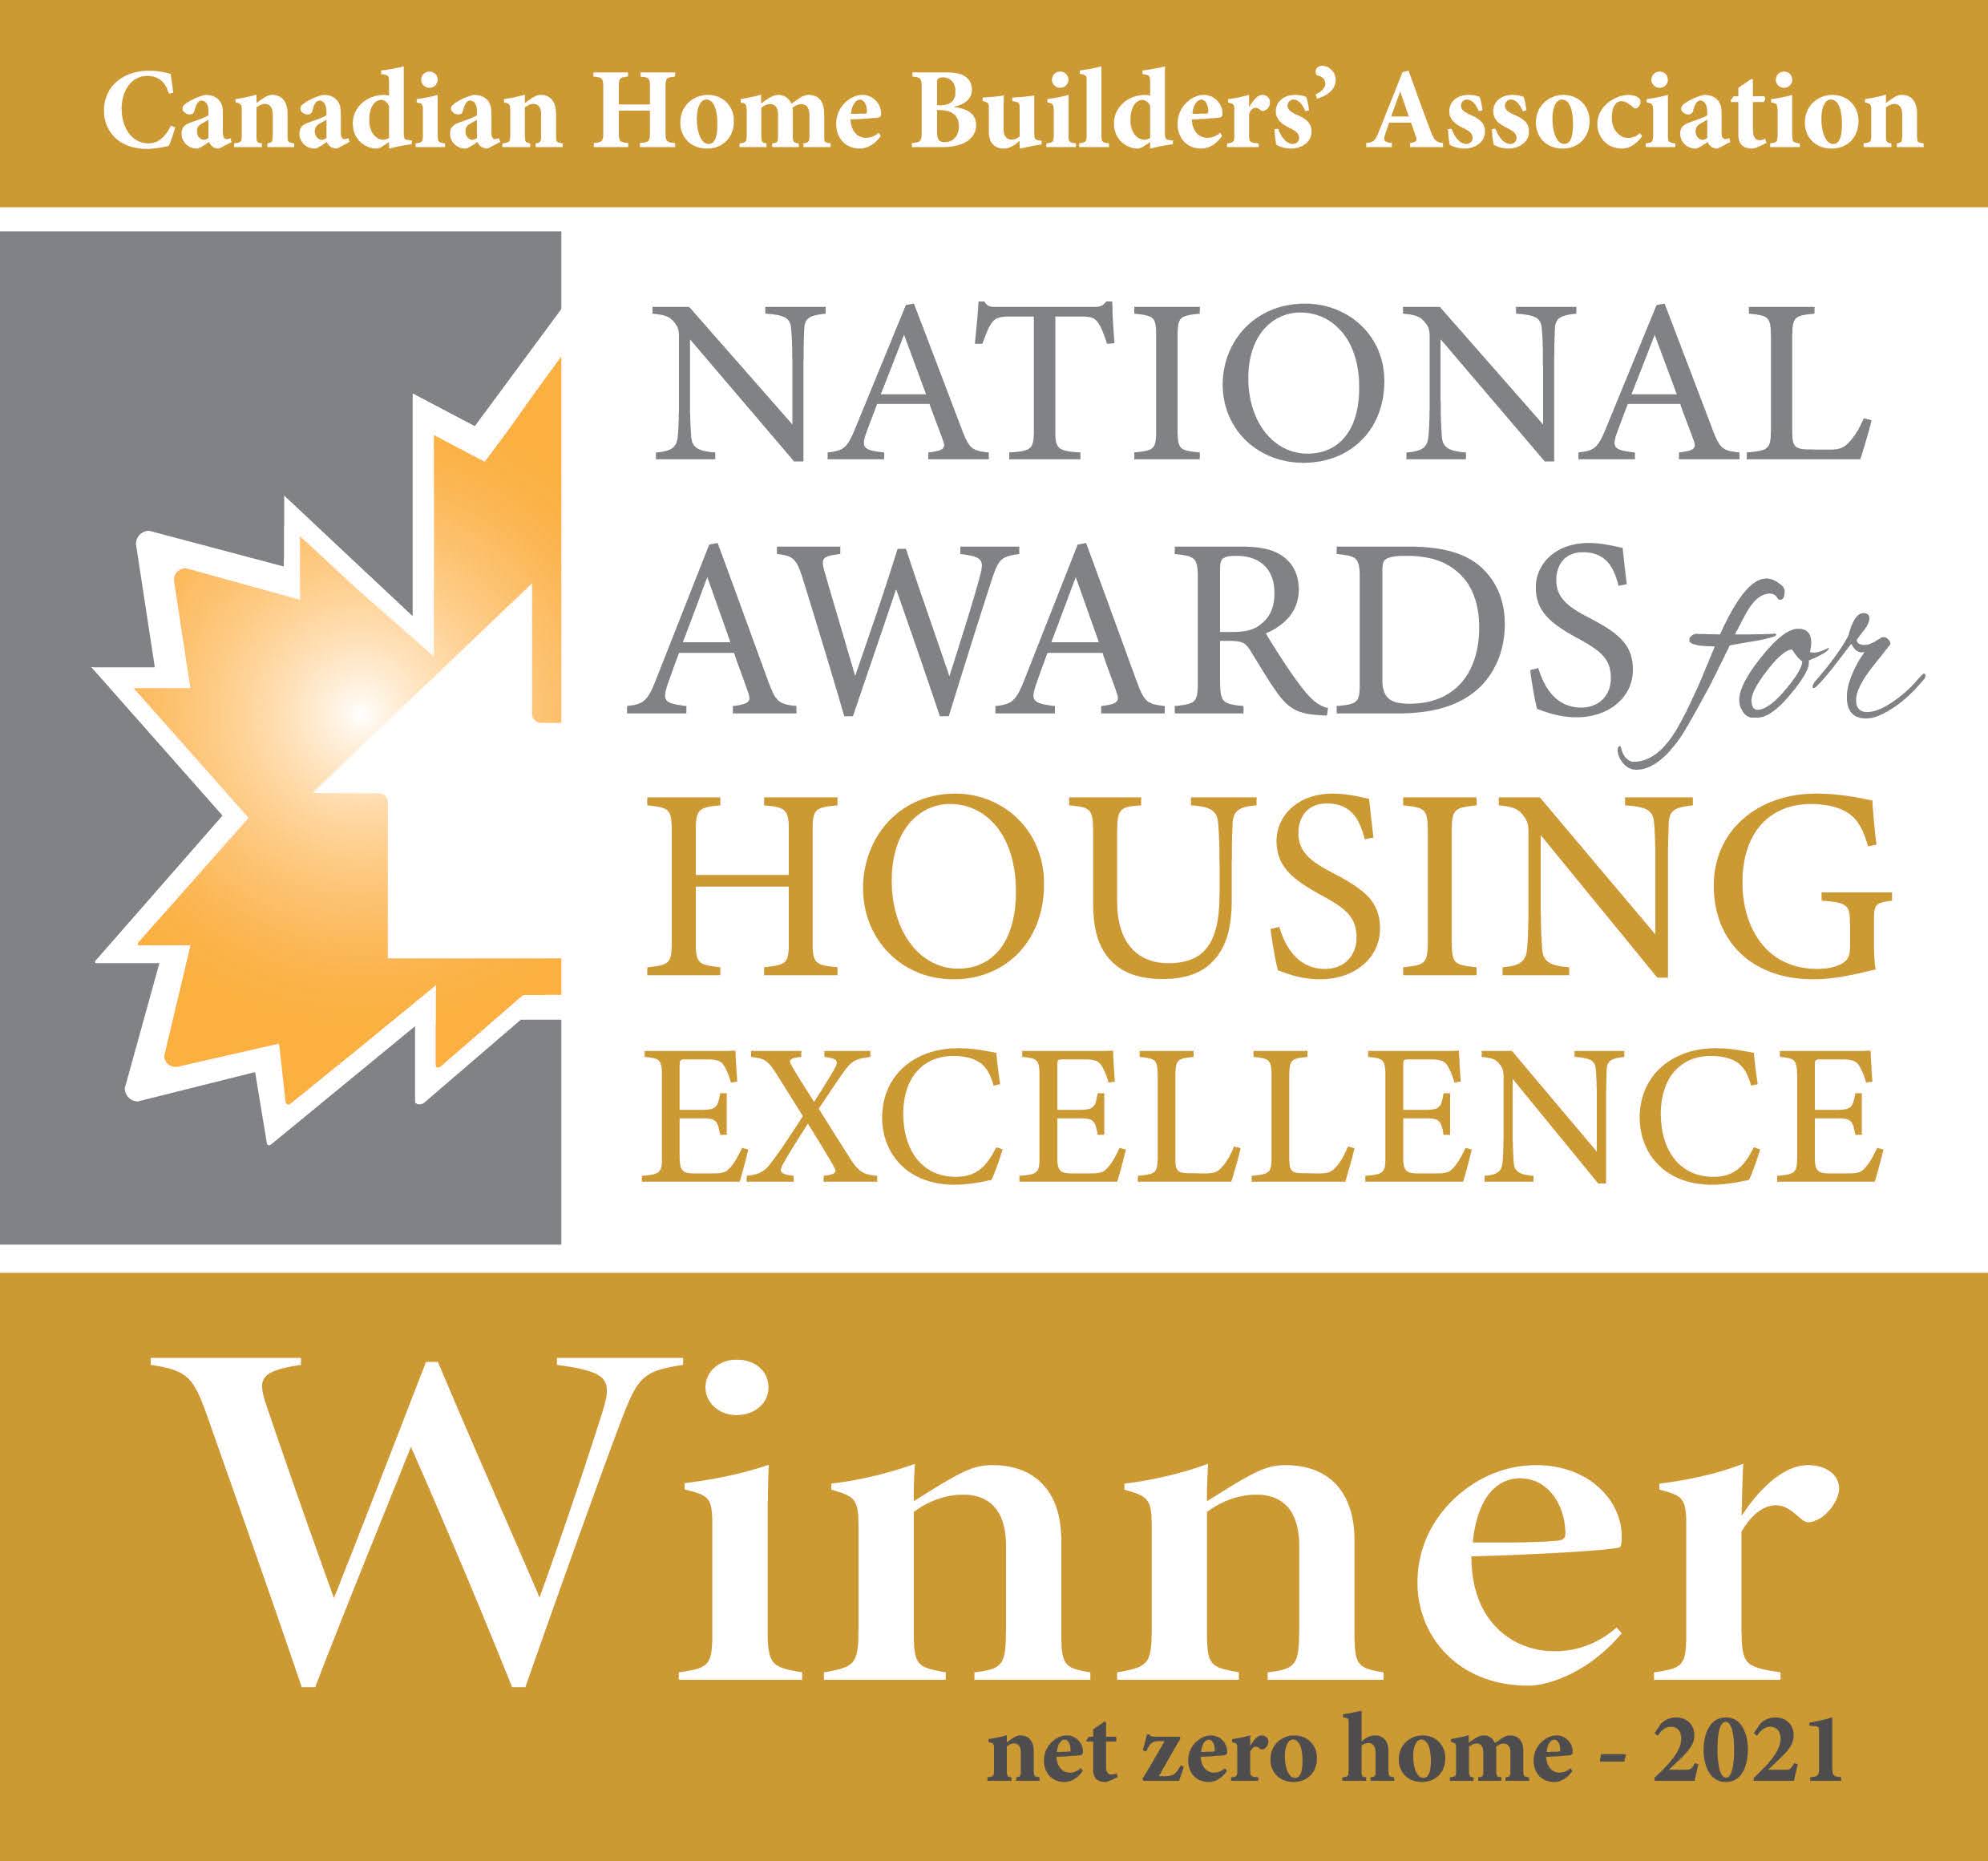 CHBA National Awards for Housing Excellence Winner - Net Zero Home